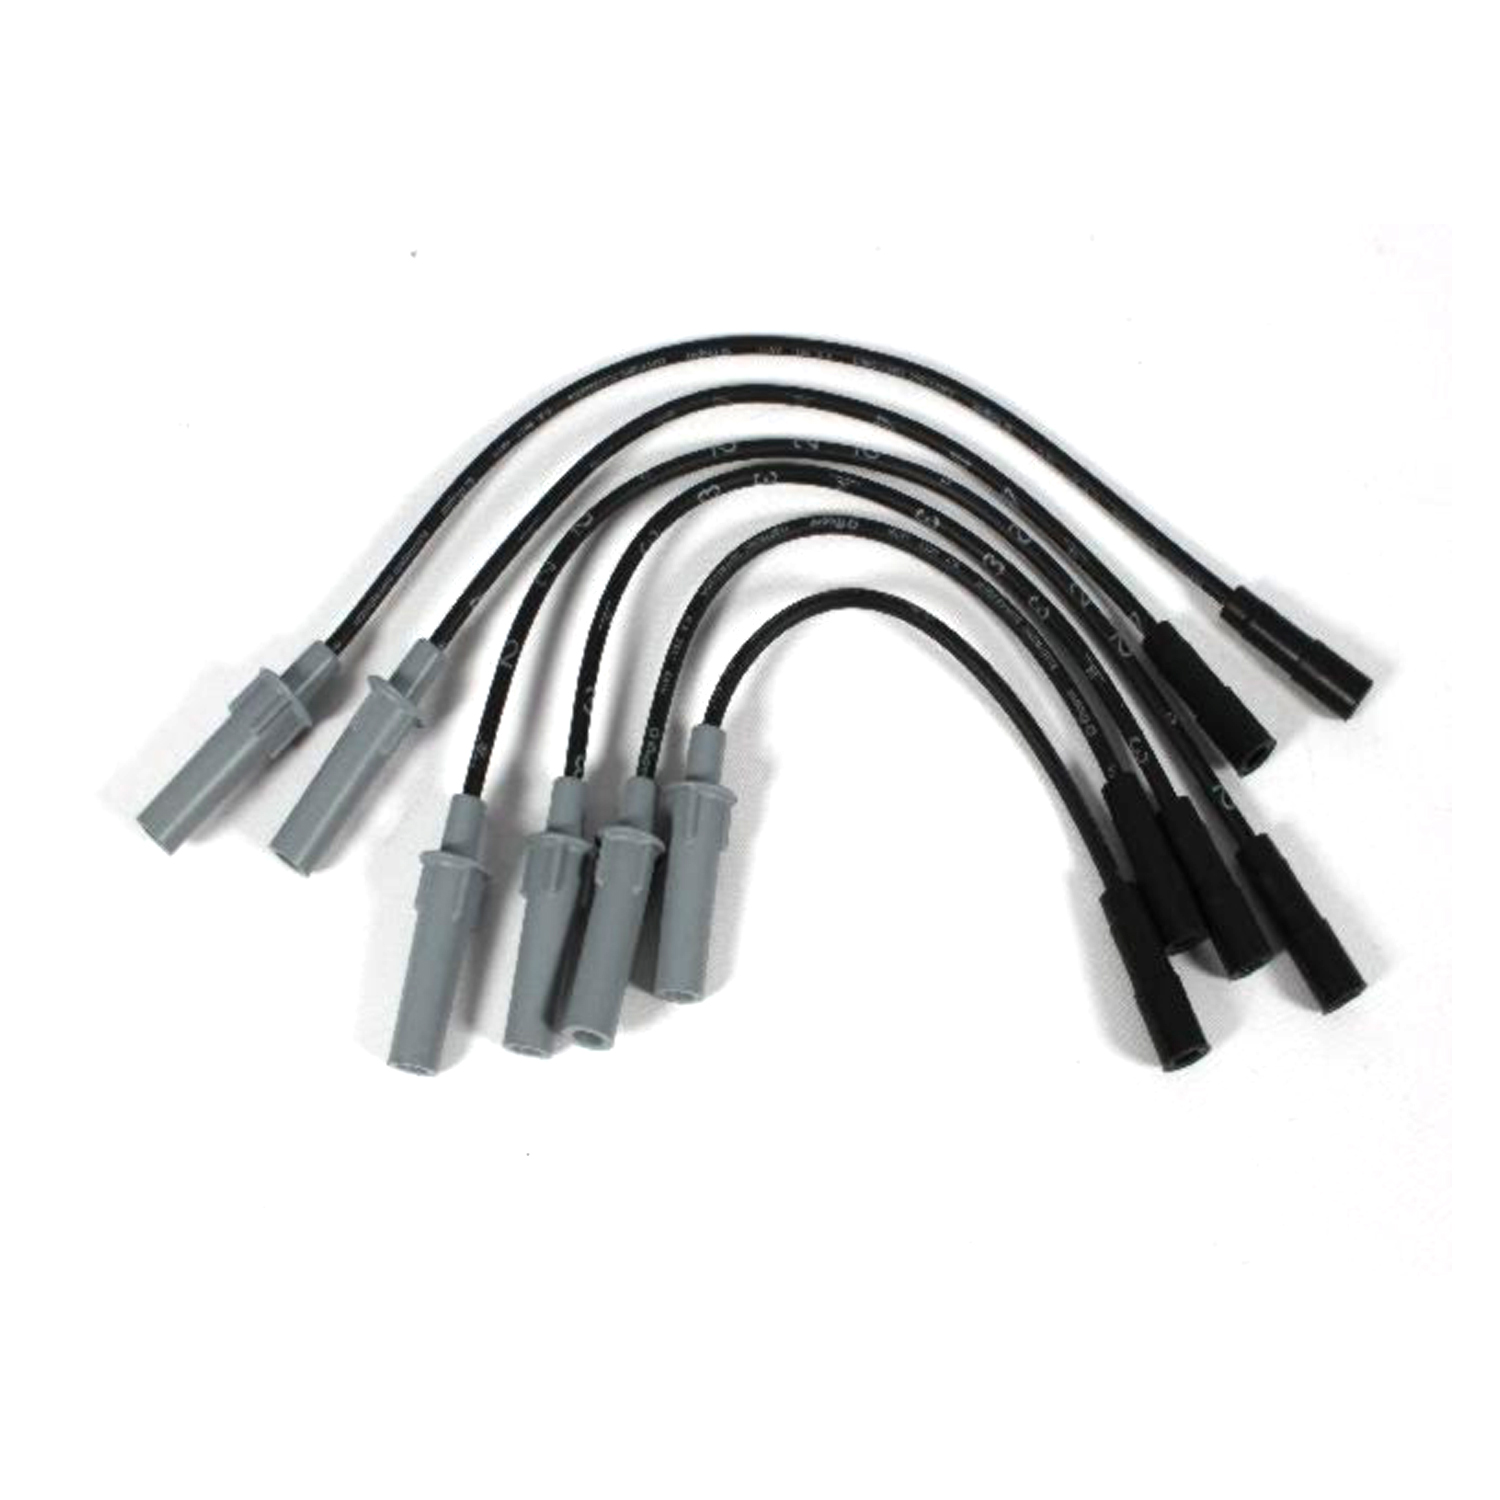 MOPAR PARTS - Spark Plug Wire Set - MOP 5019593AA